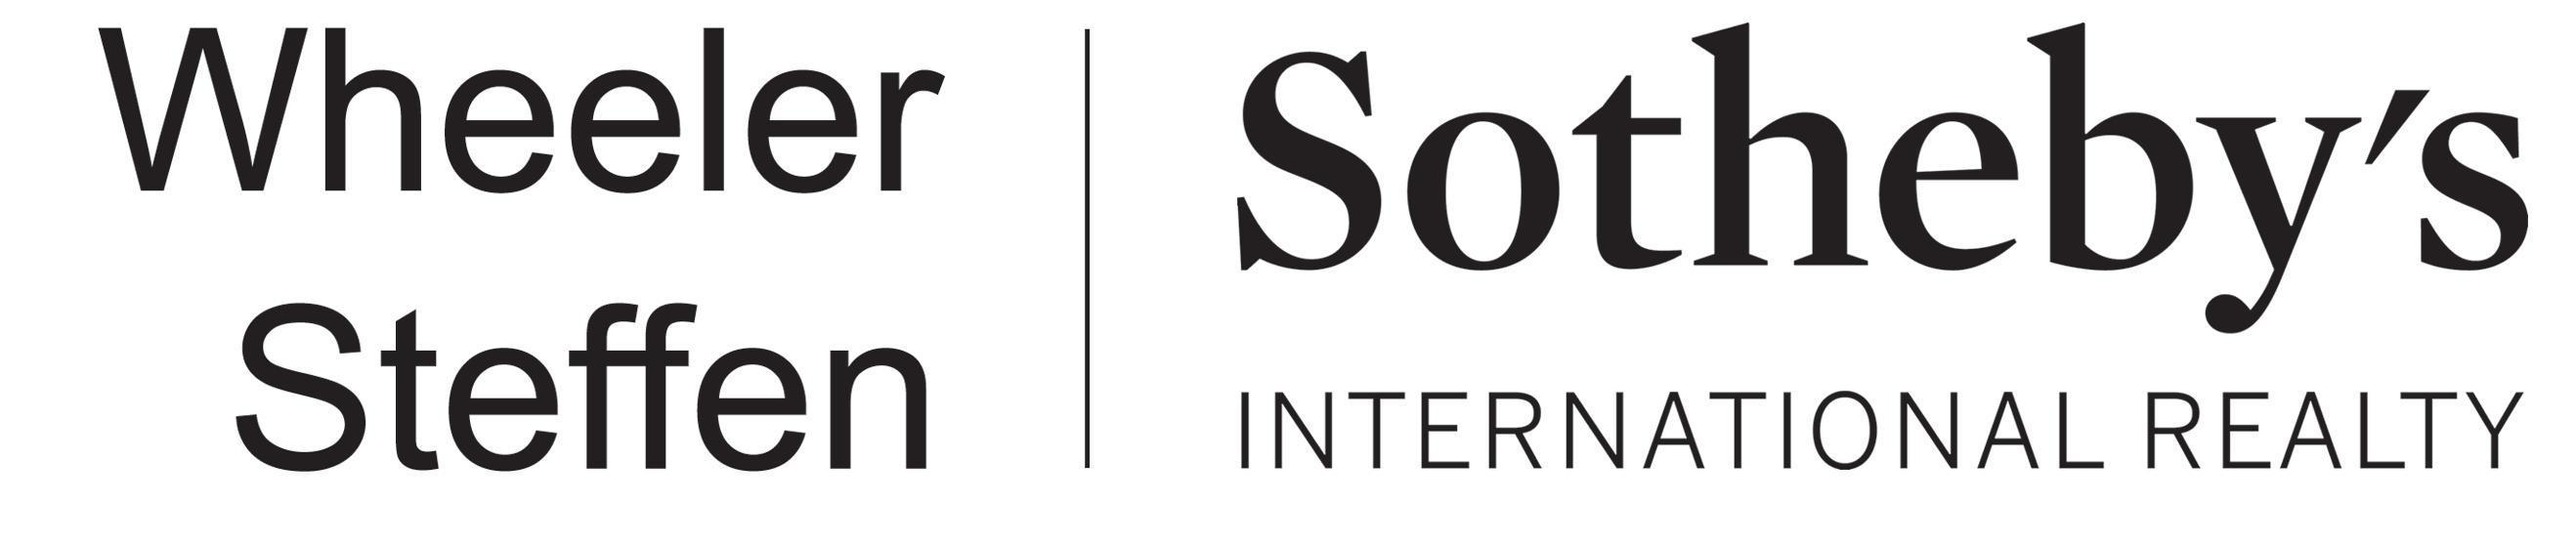 Sothebys-Wheeler-Steffen-logo